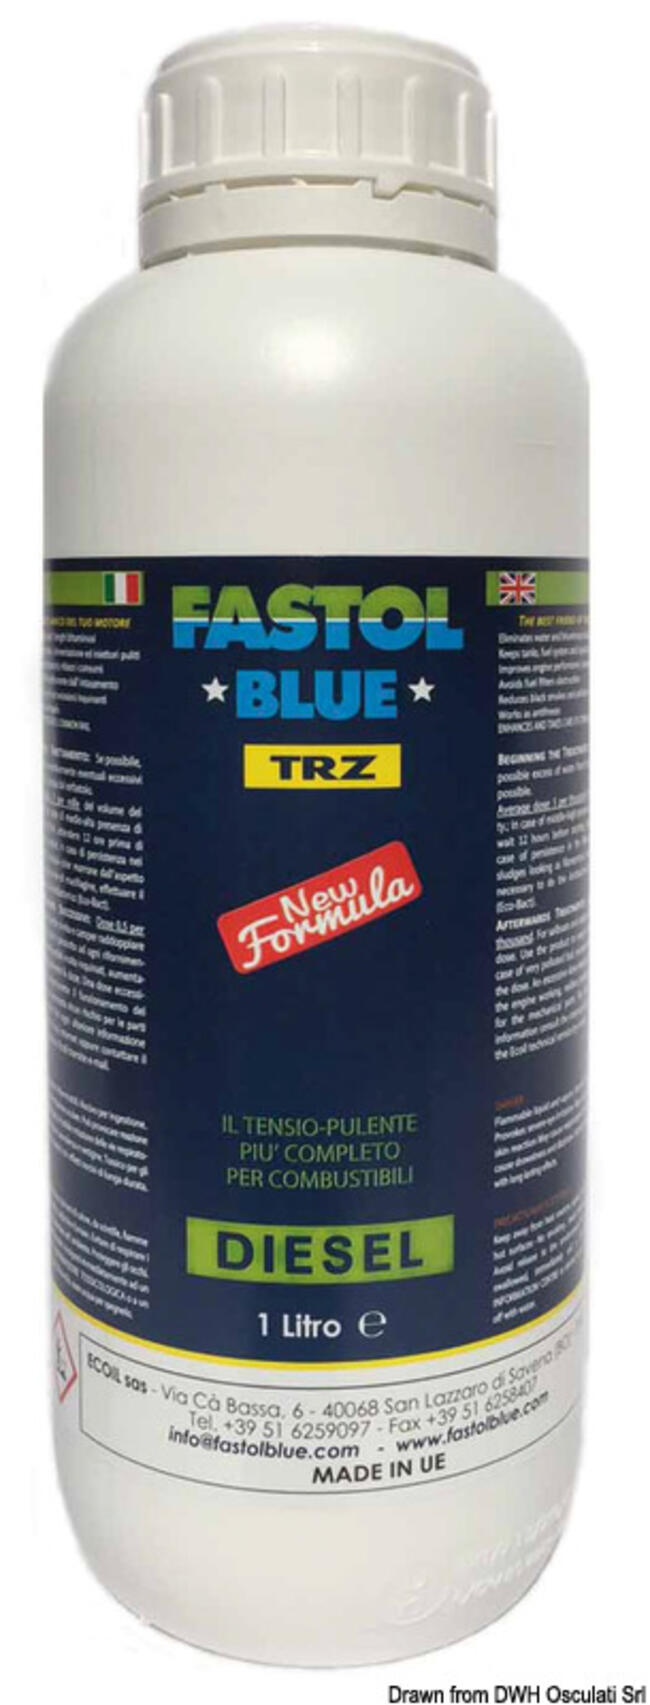 Fastol Blue Diesel Trz 1 L